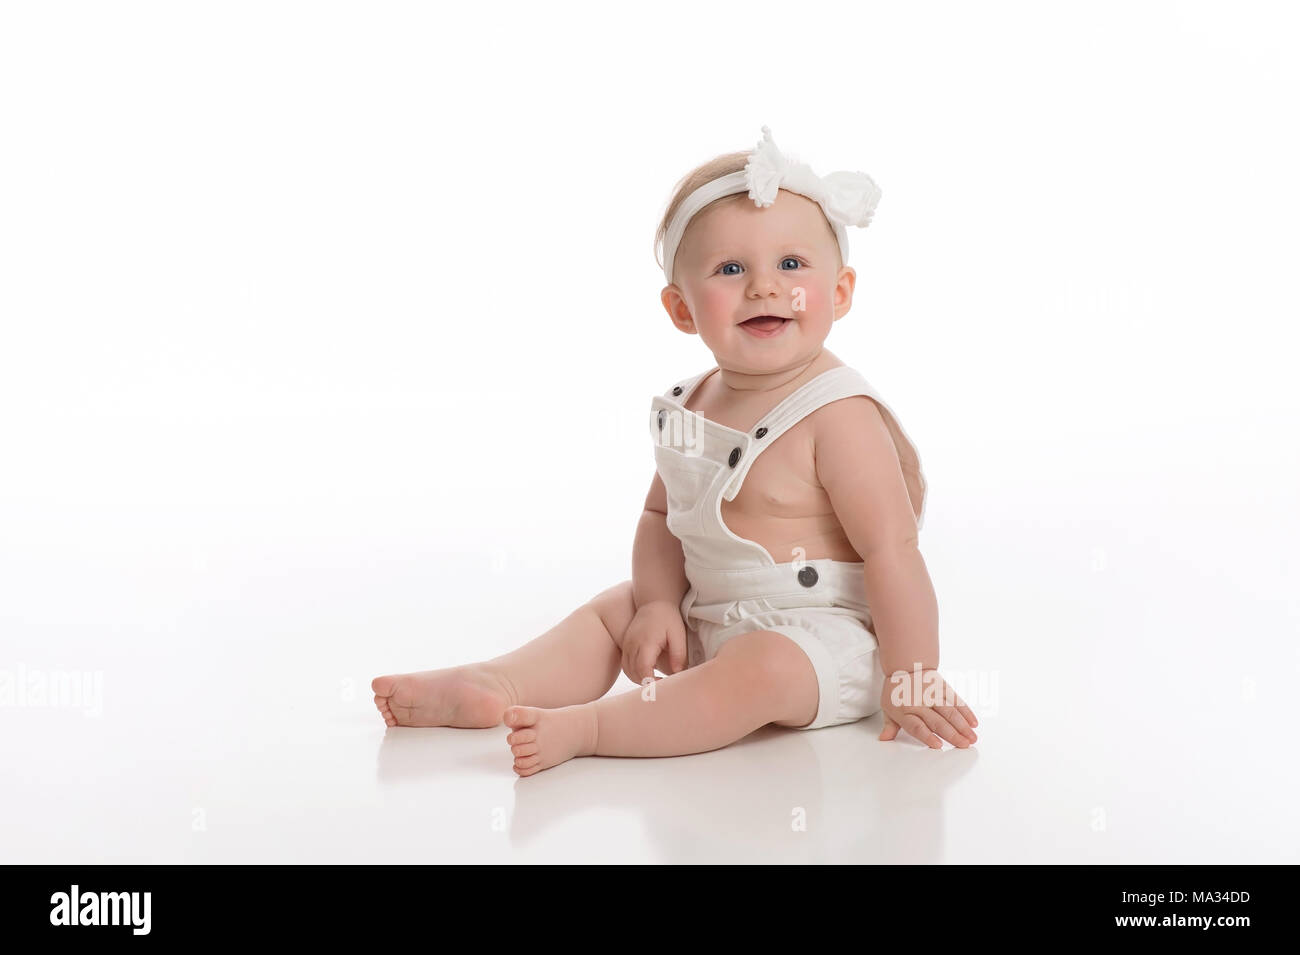 A smiling sept mois baby girl wearing combinaisons blanches. Tourné en studio, sur fond blanc, fond transparent. Banque D'Images